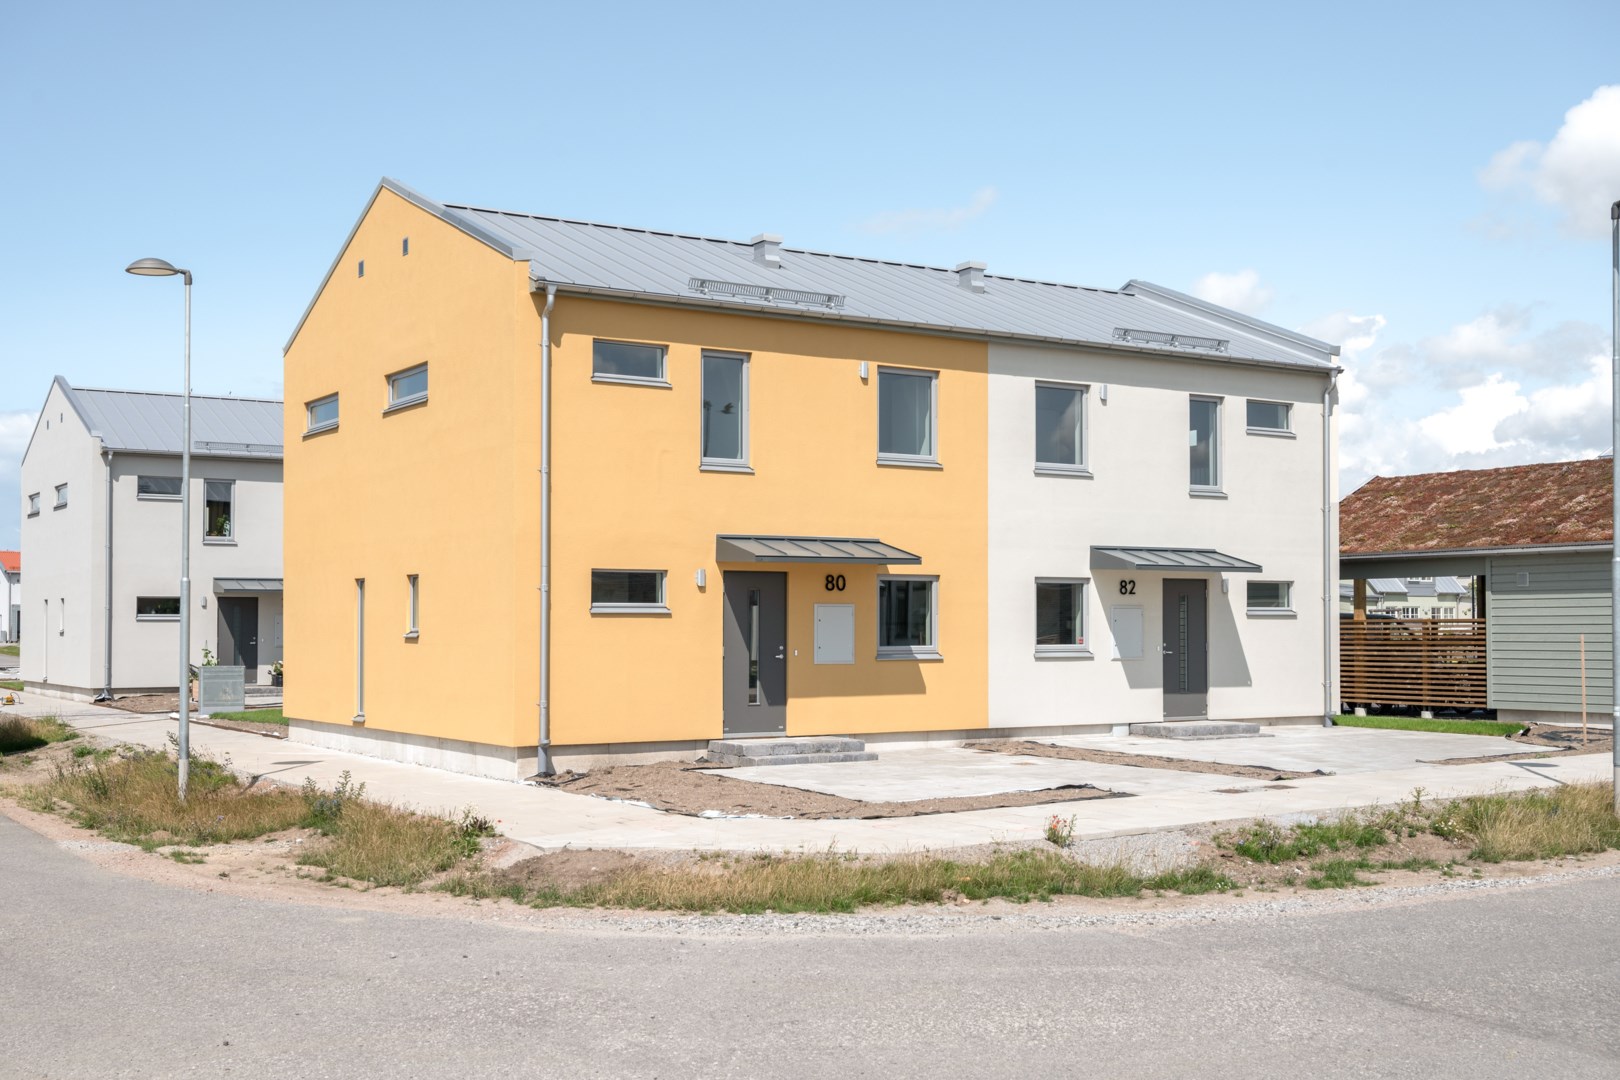 Bostadsrätt i Tygelsjö, Sverige, Spannmålsgatan 80